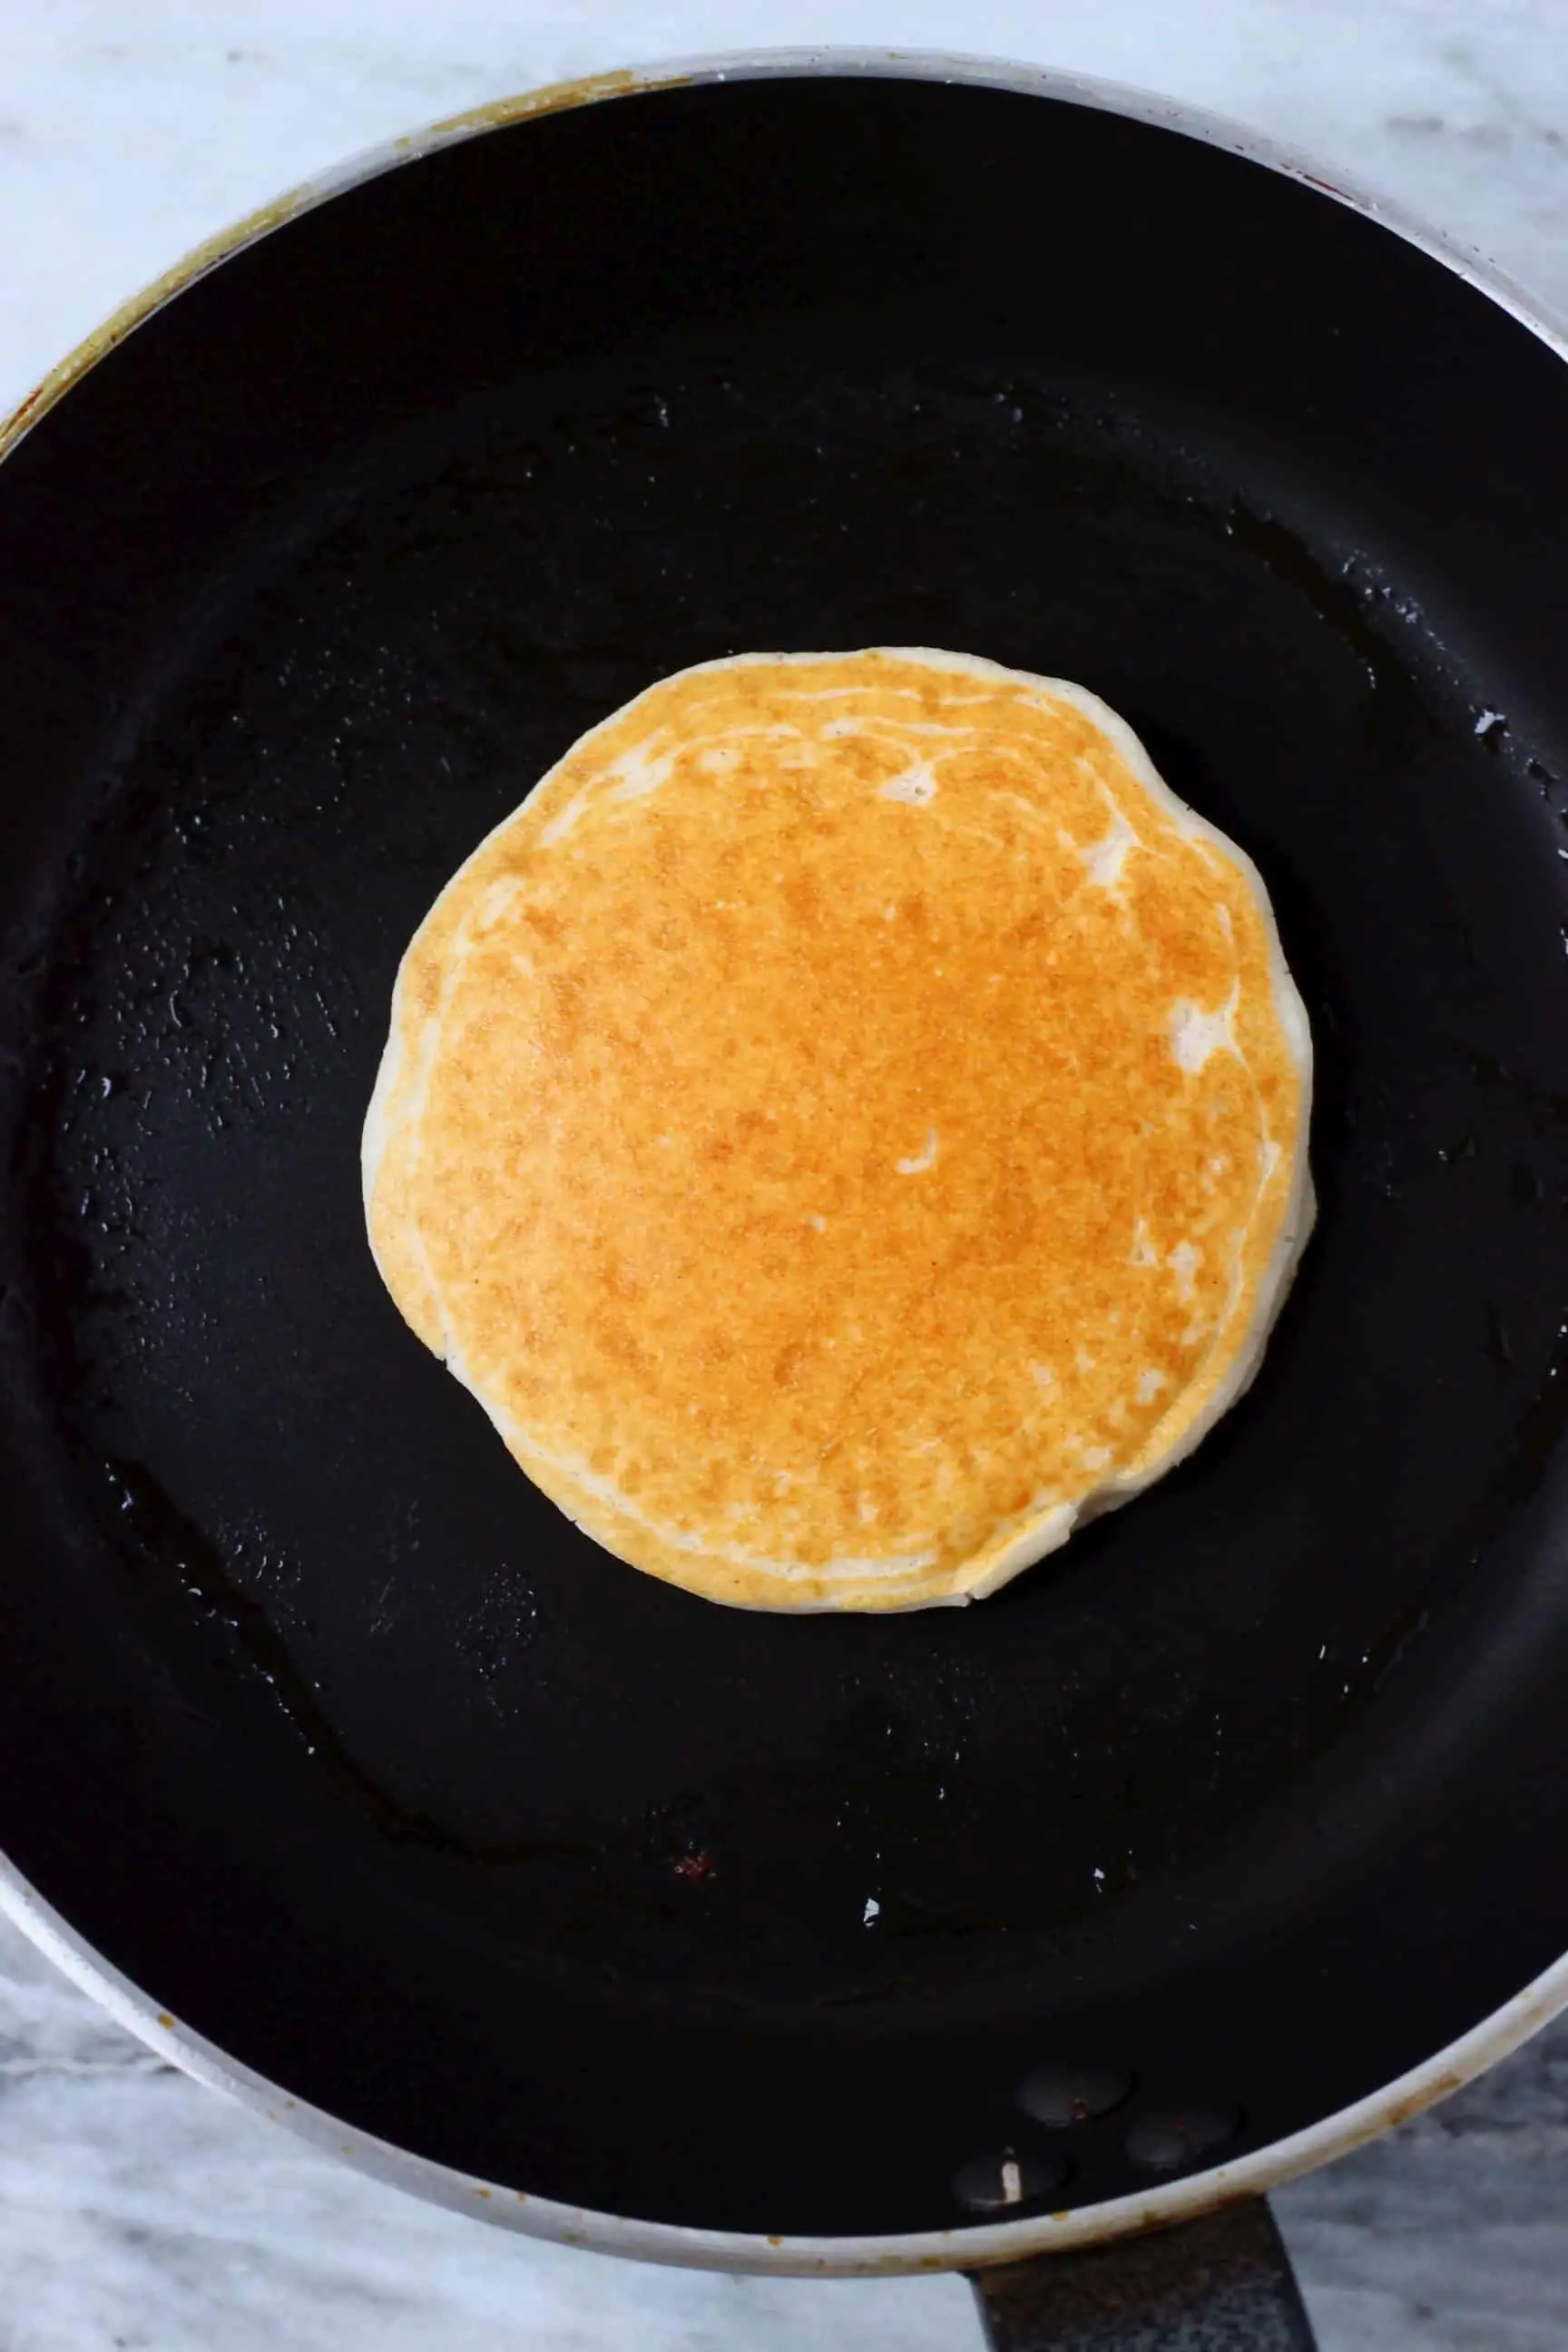 A golden brown gluten-free vegan pancake being cooked in a black frying pan 